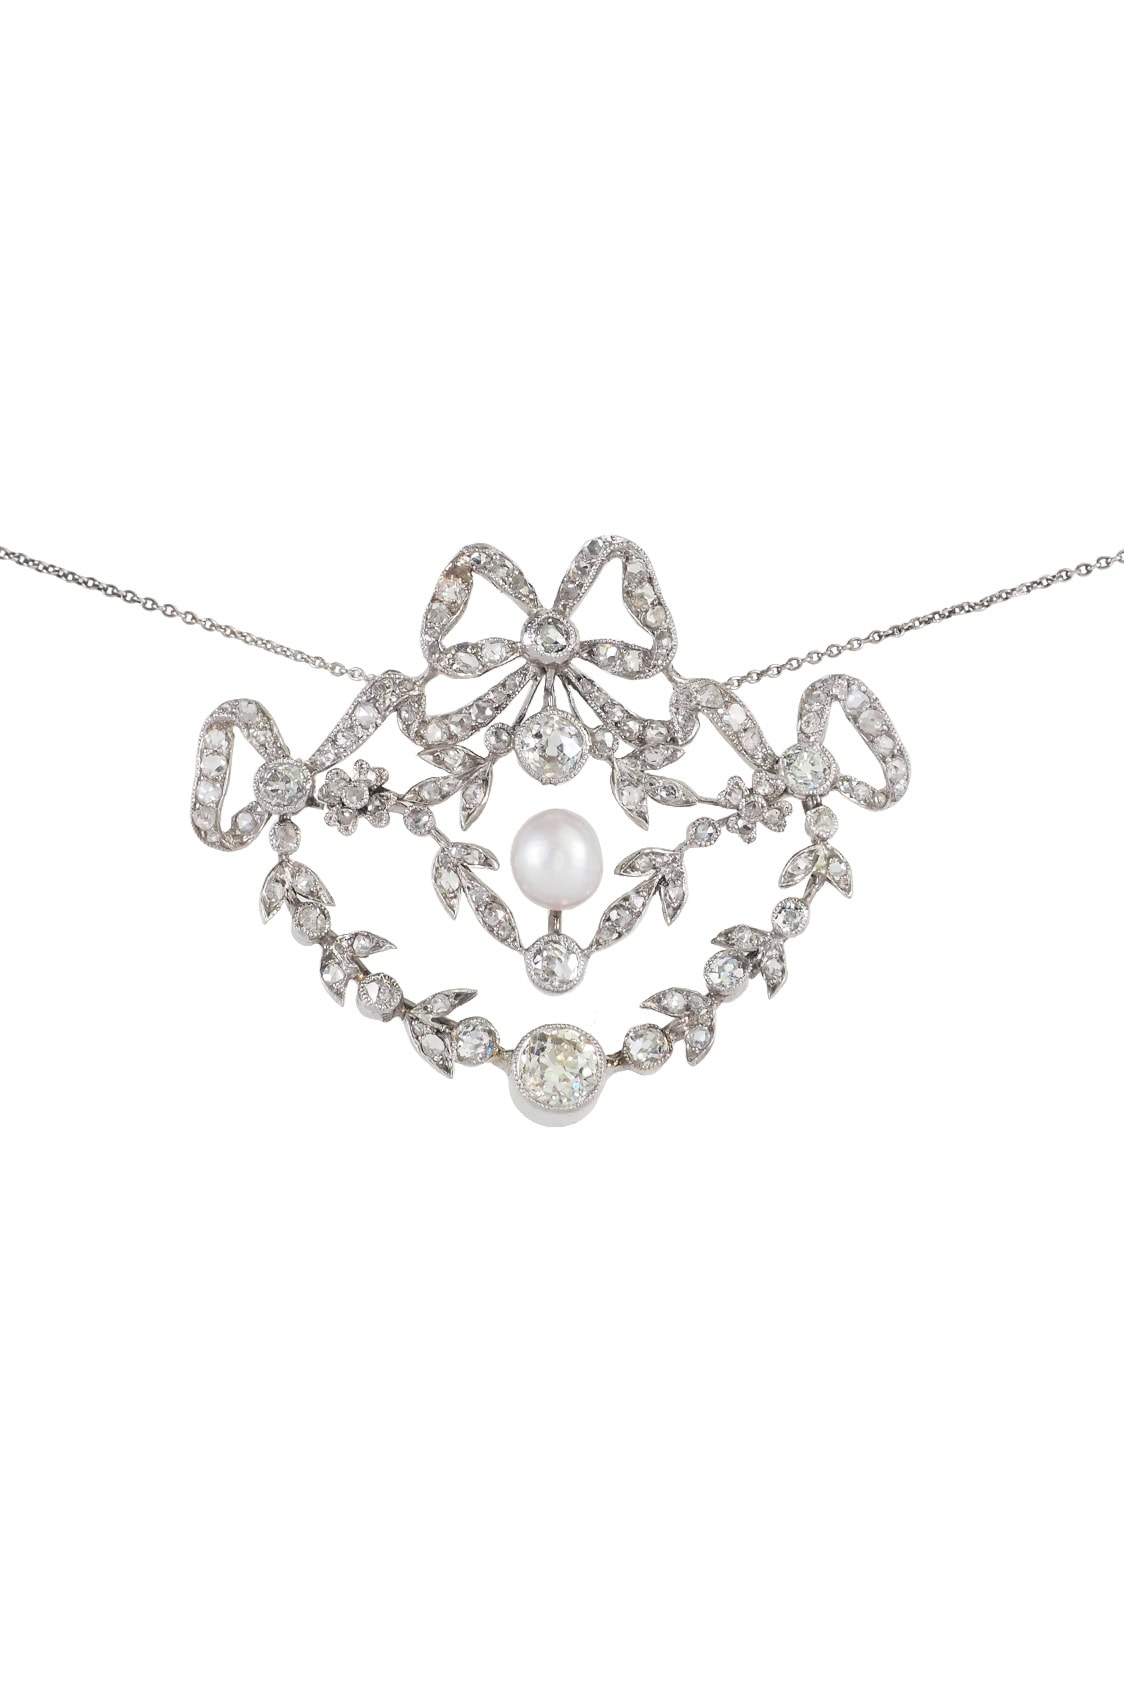 Belle Époque Collier mit Diamanten und Perle aus 18 Karat Gold und Platin